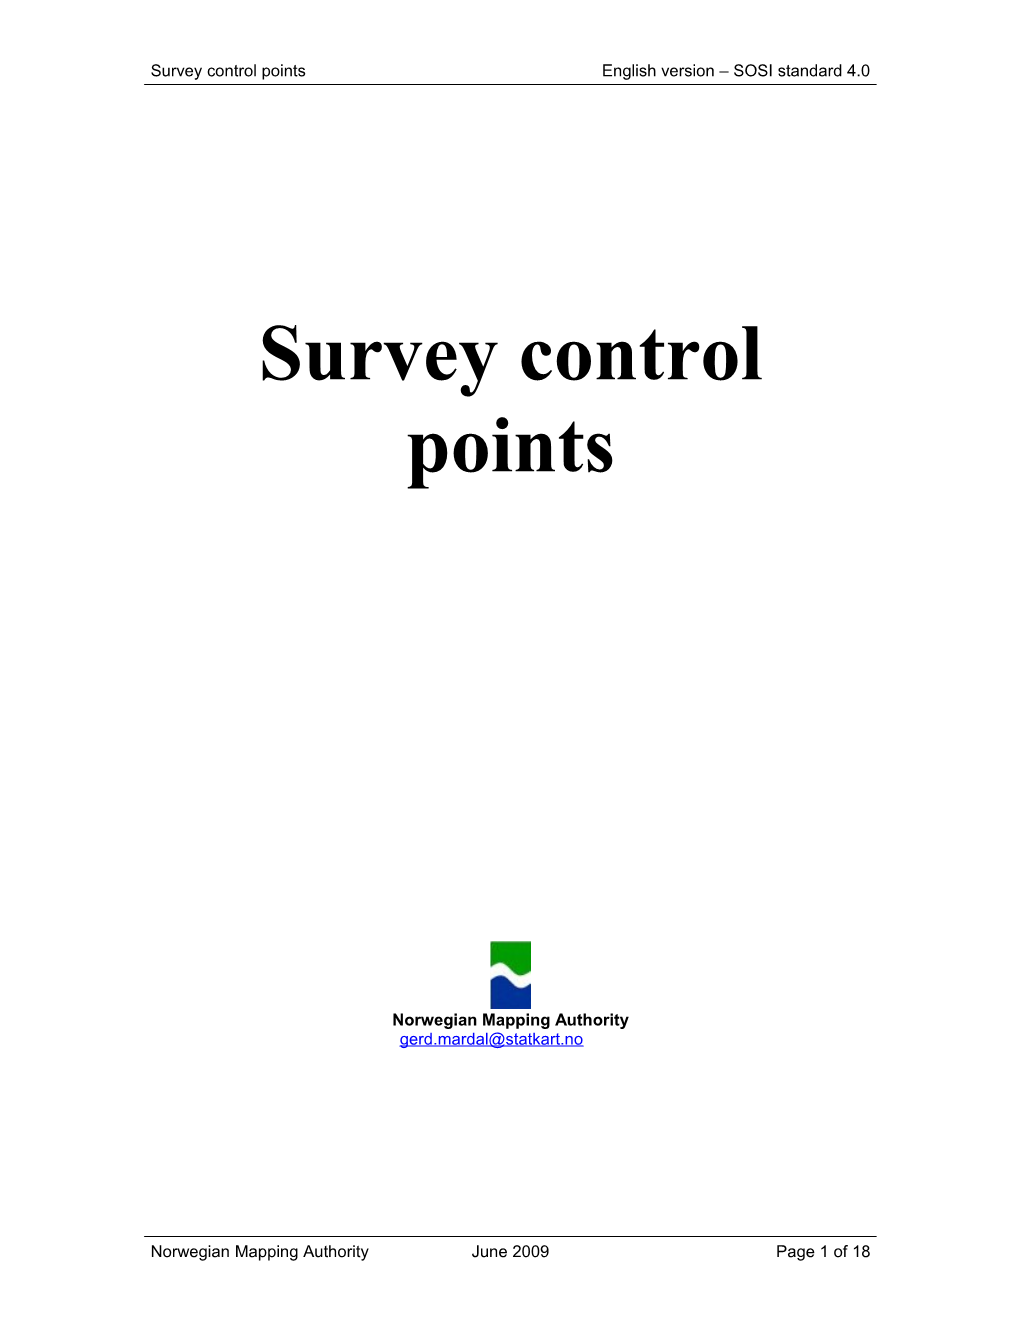 Survey Control Points